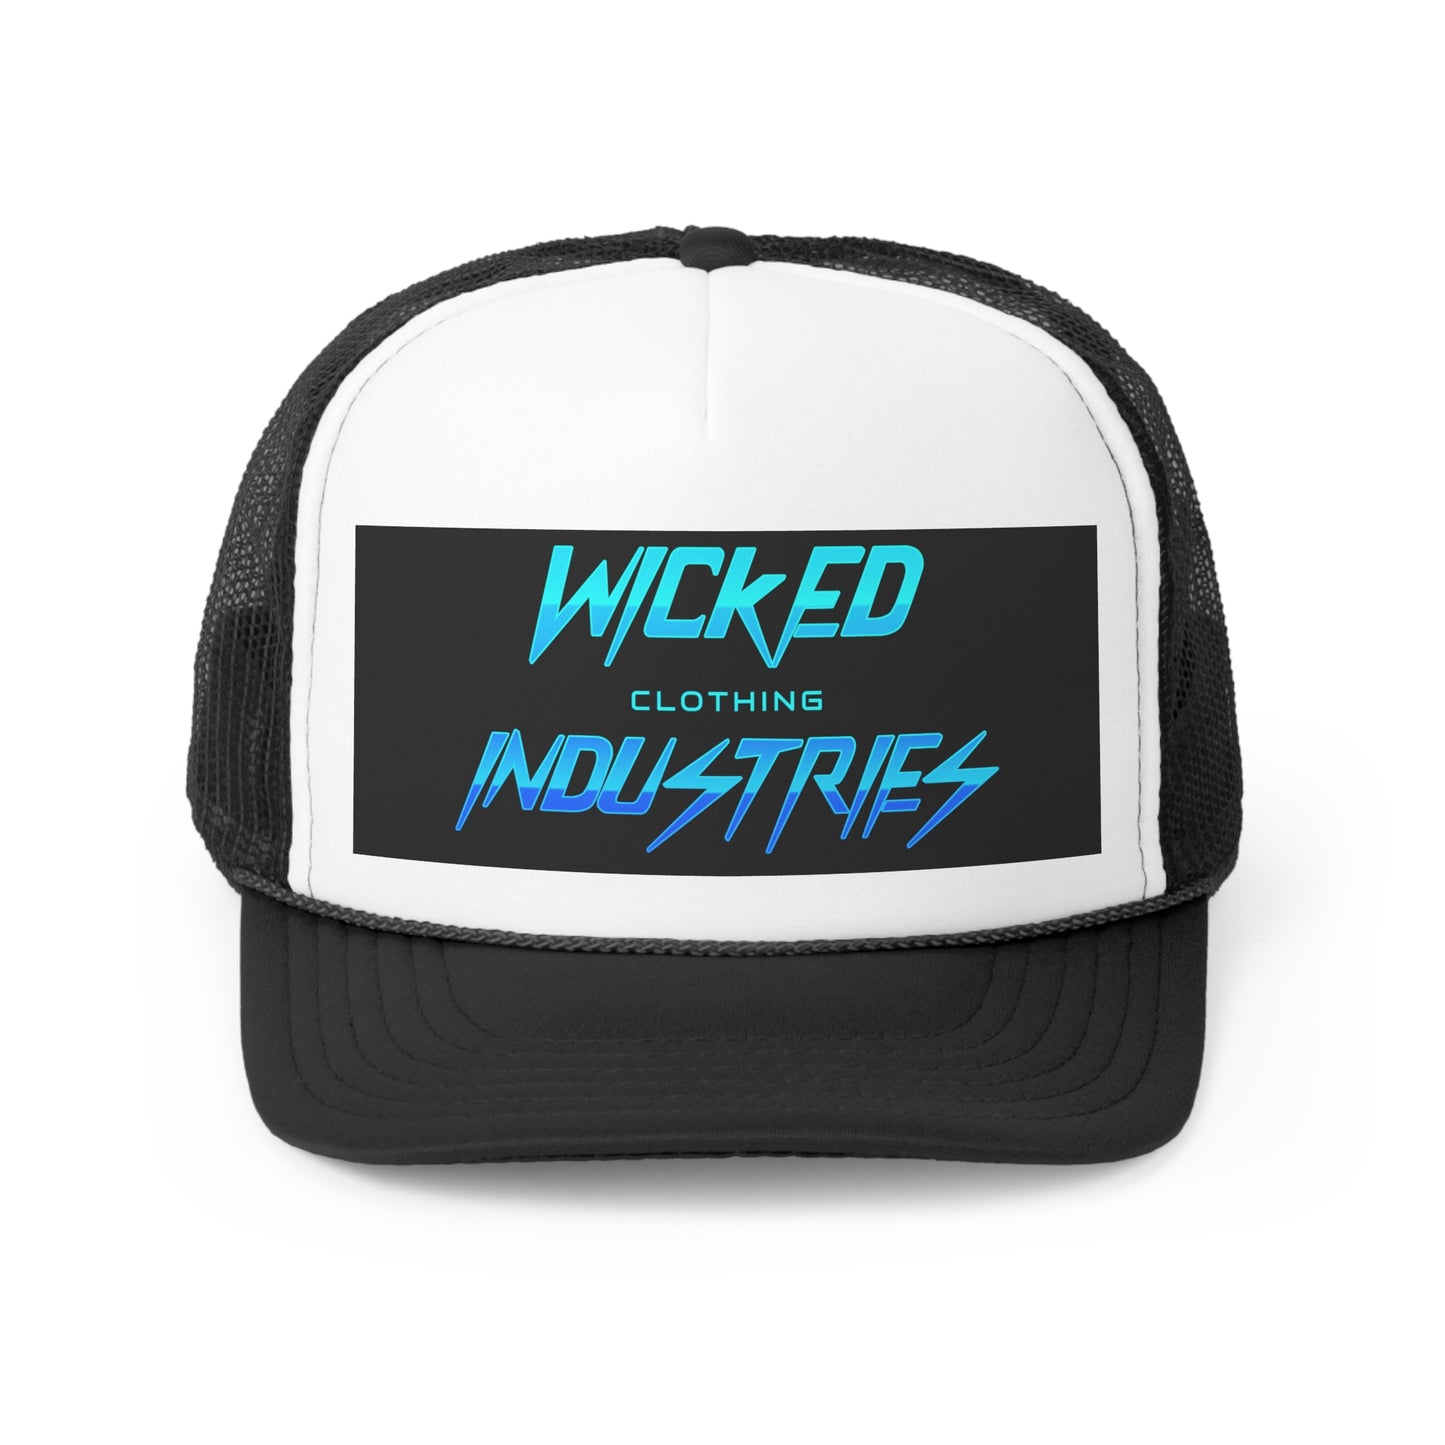 Wicked 80's 2 Trucker Caps